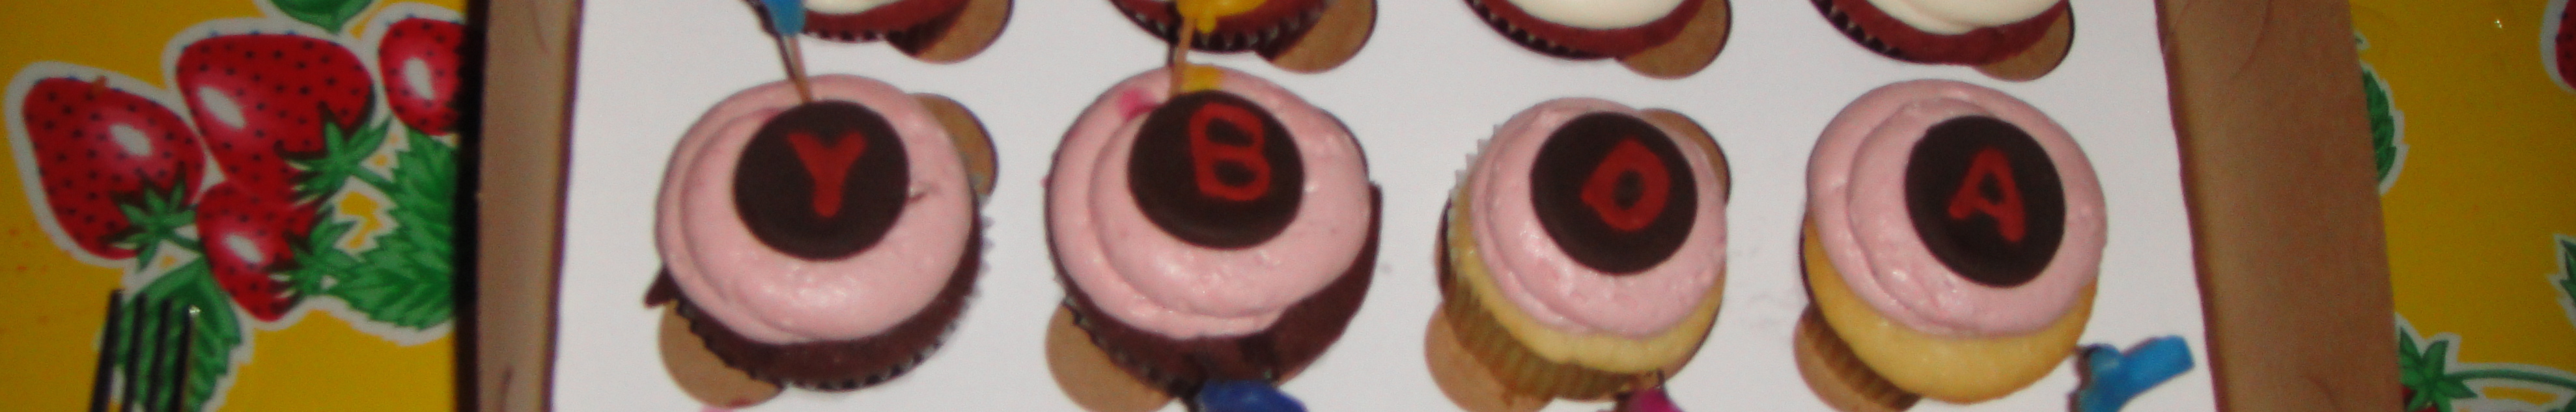 Birthday Cupcakes